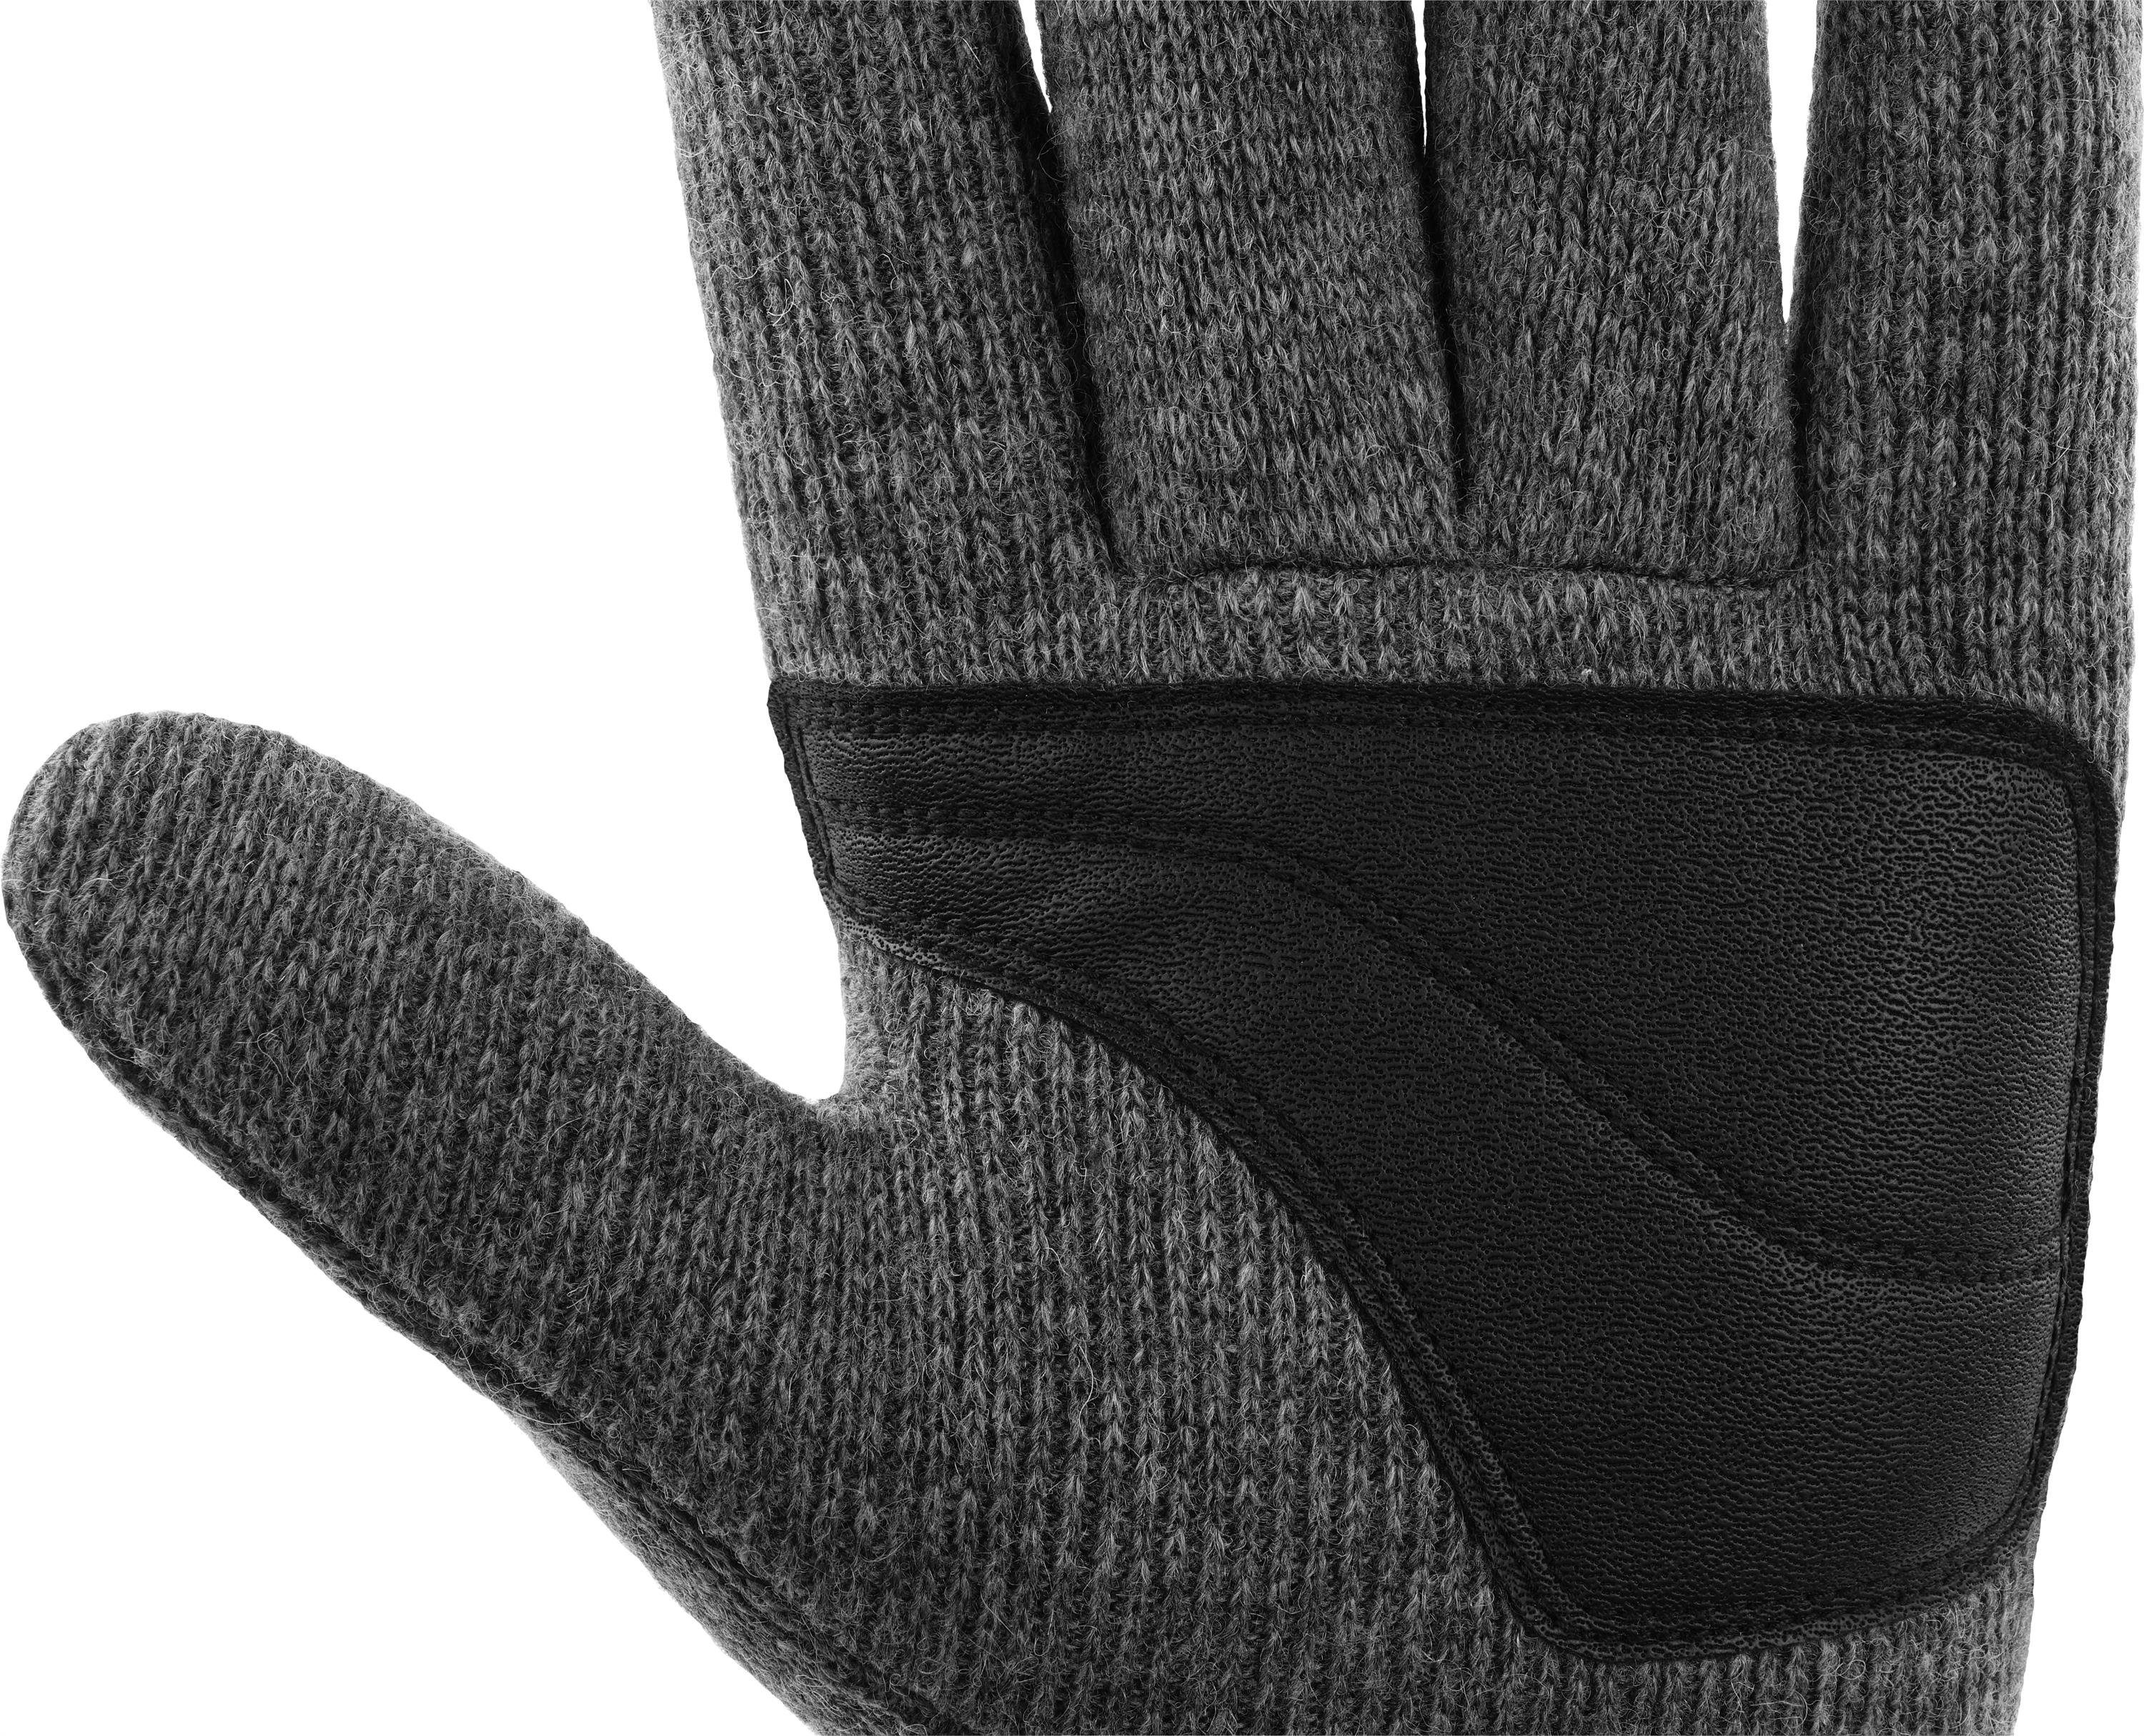 Strickhandschuhe Thermofutterund Thinsulate™ normani Winterhandschuhe Woll-Strick-Fingerhandschuhe Outdoorhandschuhe Innenmaterial Grau Fleece Wollhandschuhe mit Thermohandschuhe Hamilton